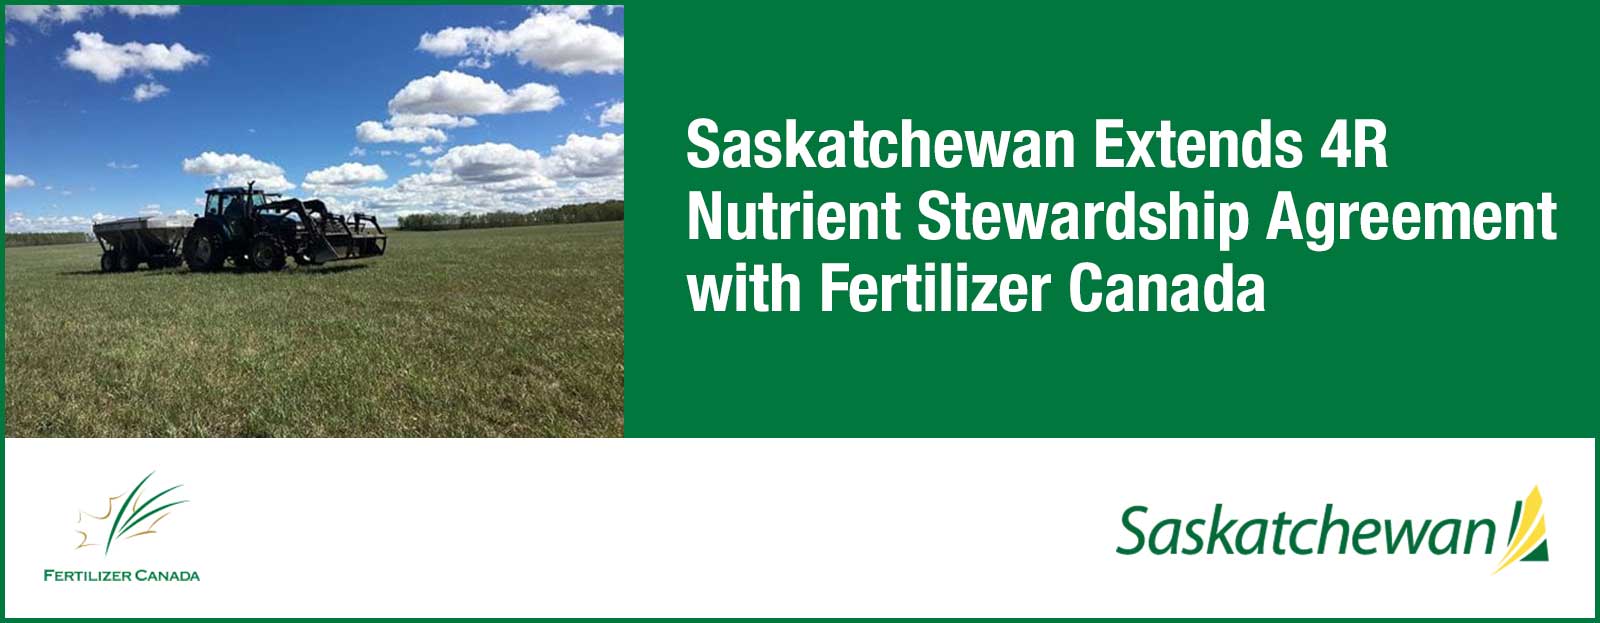 Banner for Saskatchewan Extends 4R Nutrient Stewardship Agreement with Fertilizer Canada